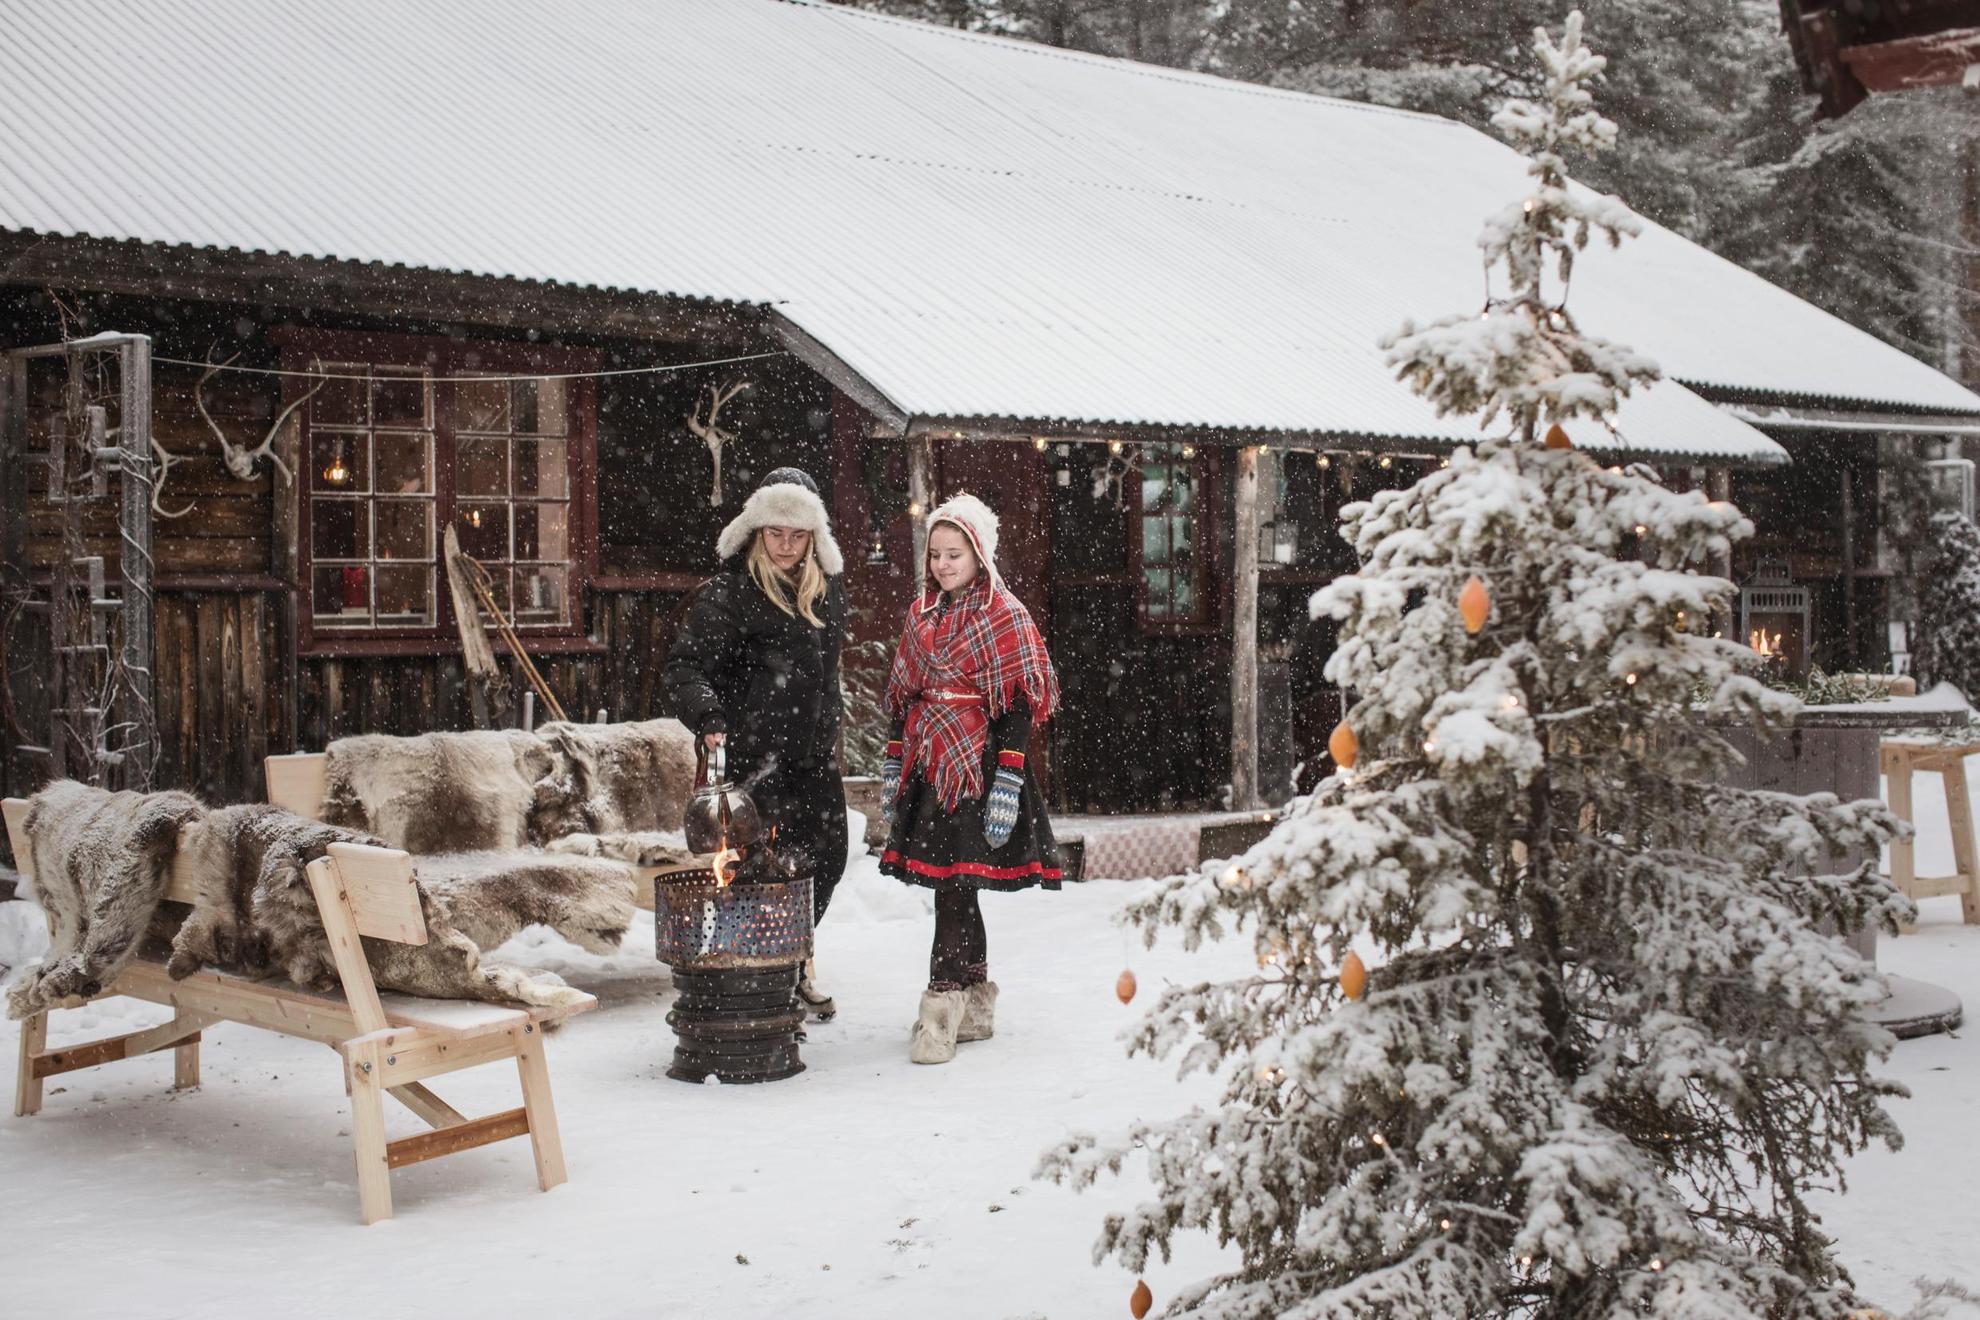 Zwei junge Frauen stehen im Schnee vor einem Holzhaus. Eines der Mädchen trägt eine samische Tracht. Sie kochen über einem offenen Feuer. Auf den Bänken liegen Rentierfelle und vorne steht eine Tanne.